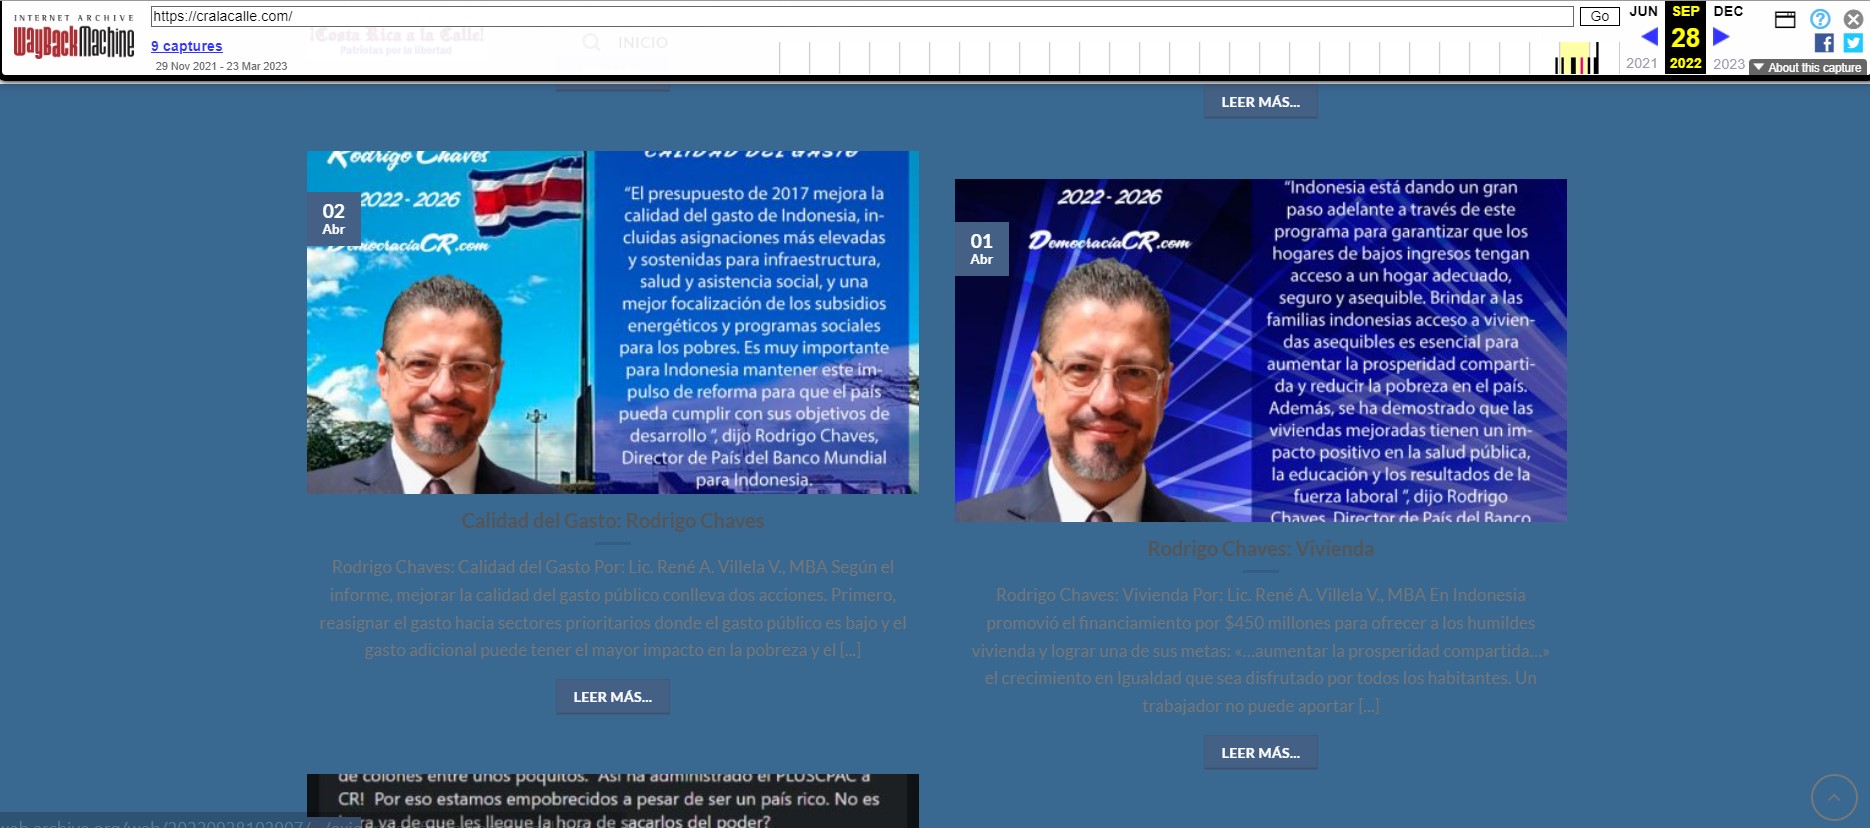  Captura de pantalla del sitio cralacalle.com disponible en Wayback Machine. 